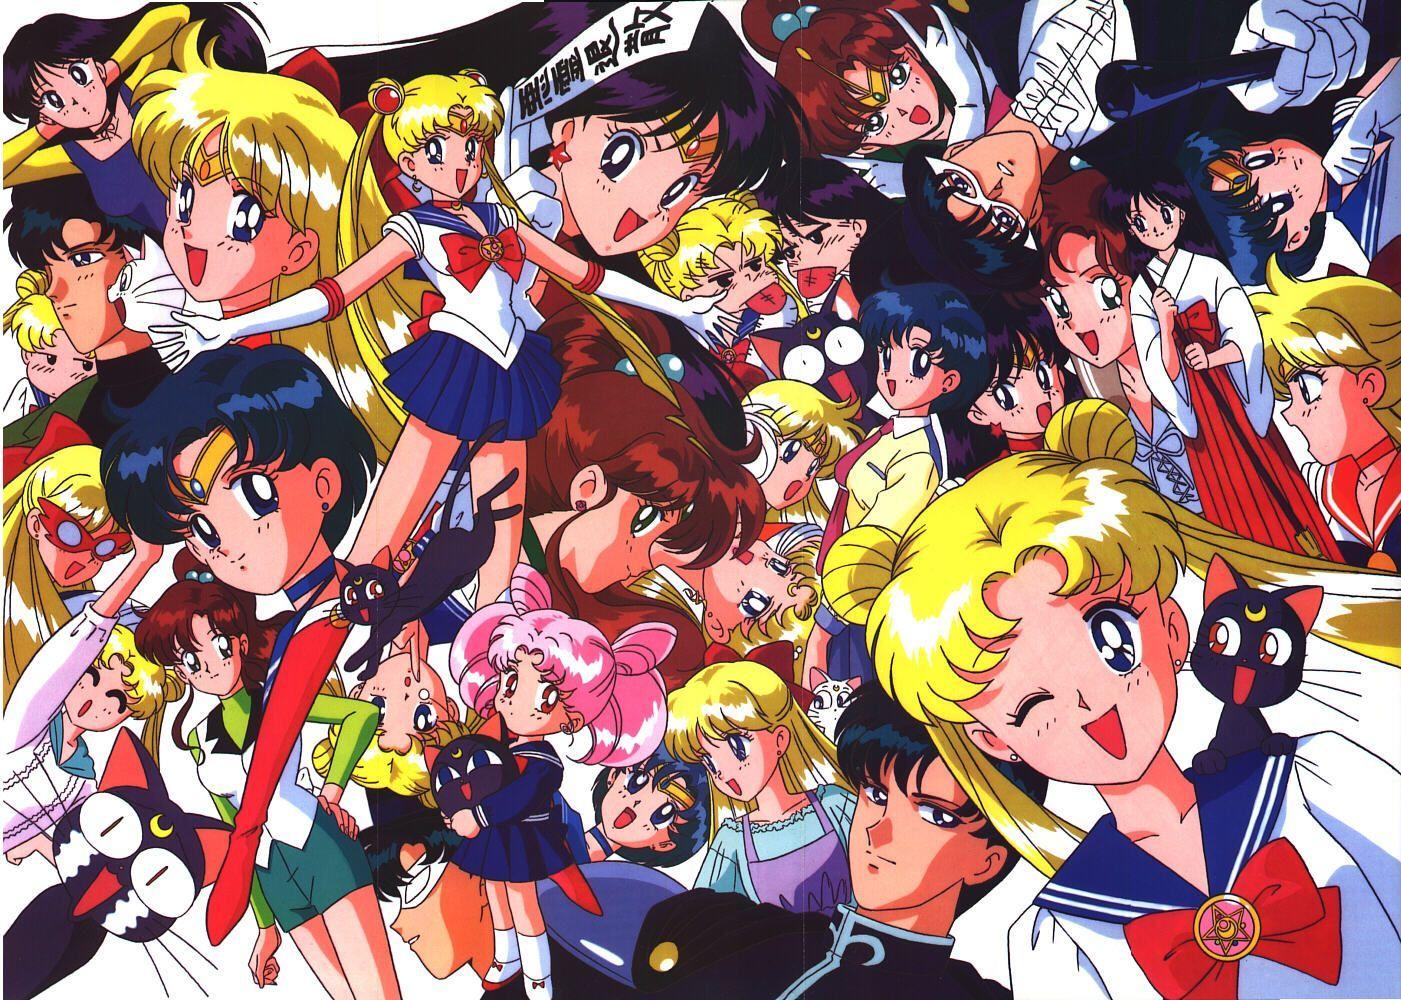 Tags: Bishoujo Senshi Sailor Moon, Tsukino Usagi, Wallpaper, Sailor